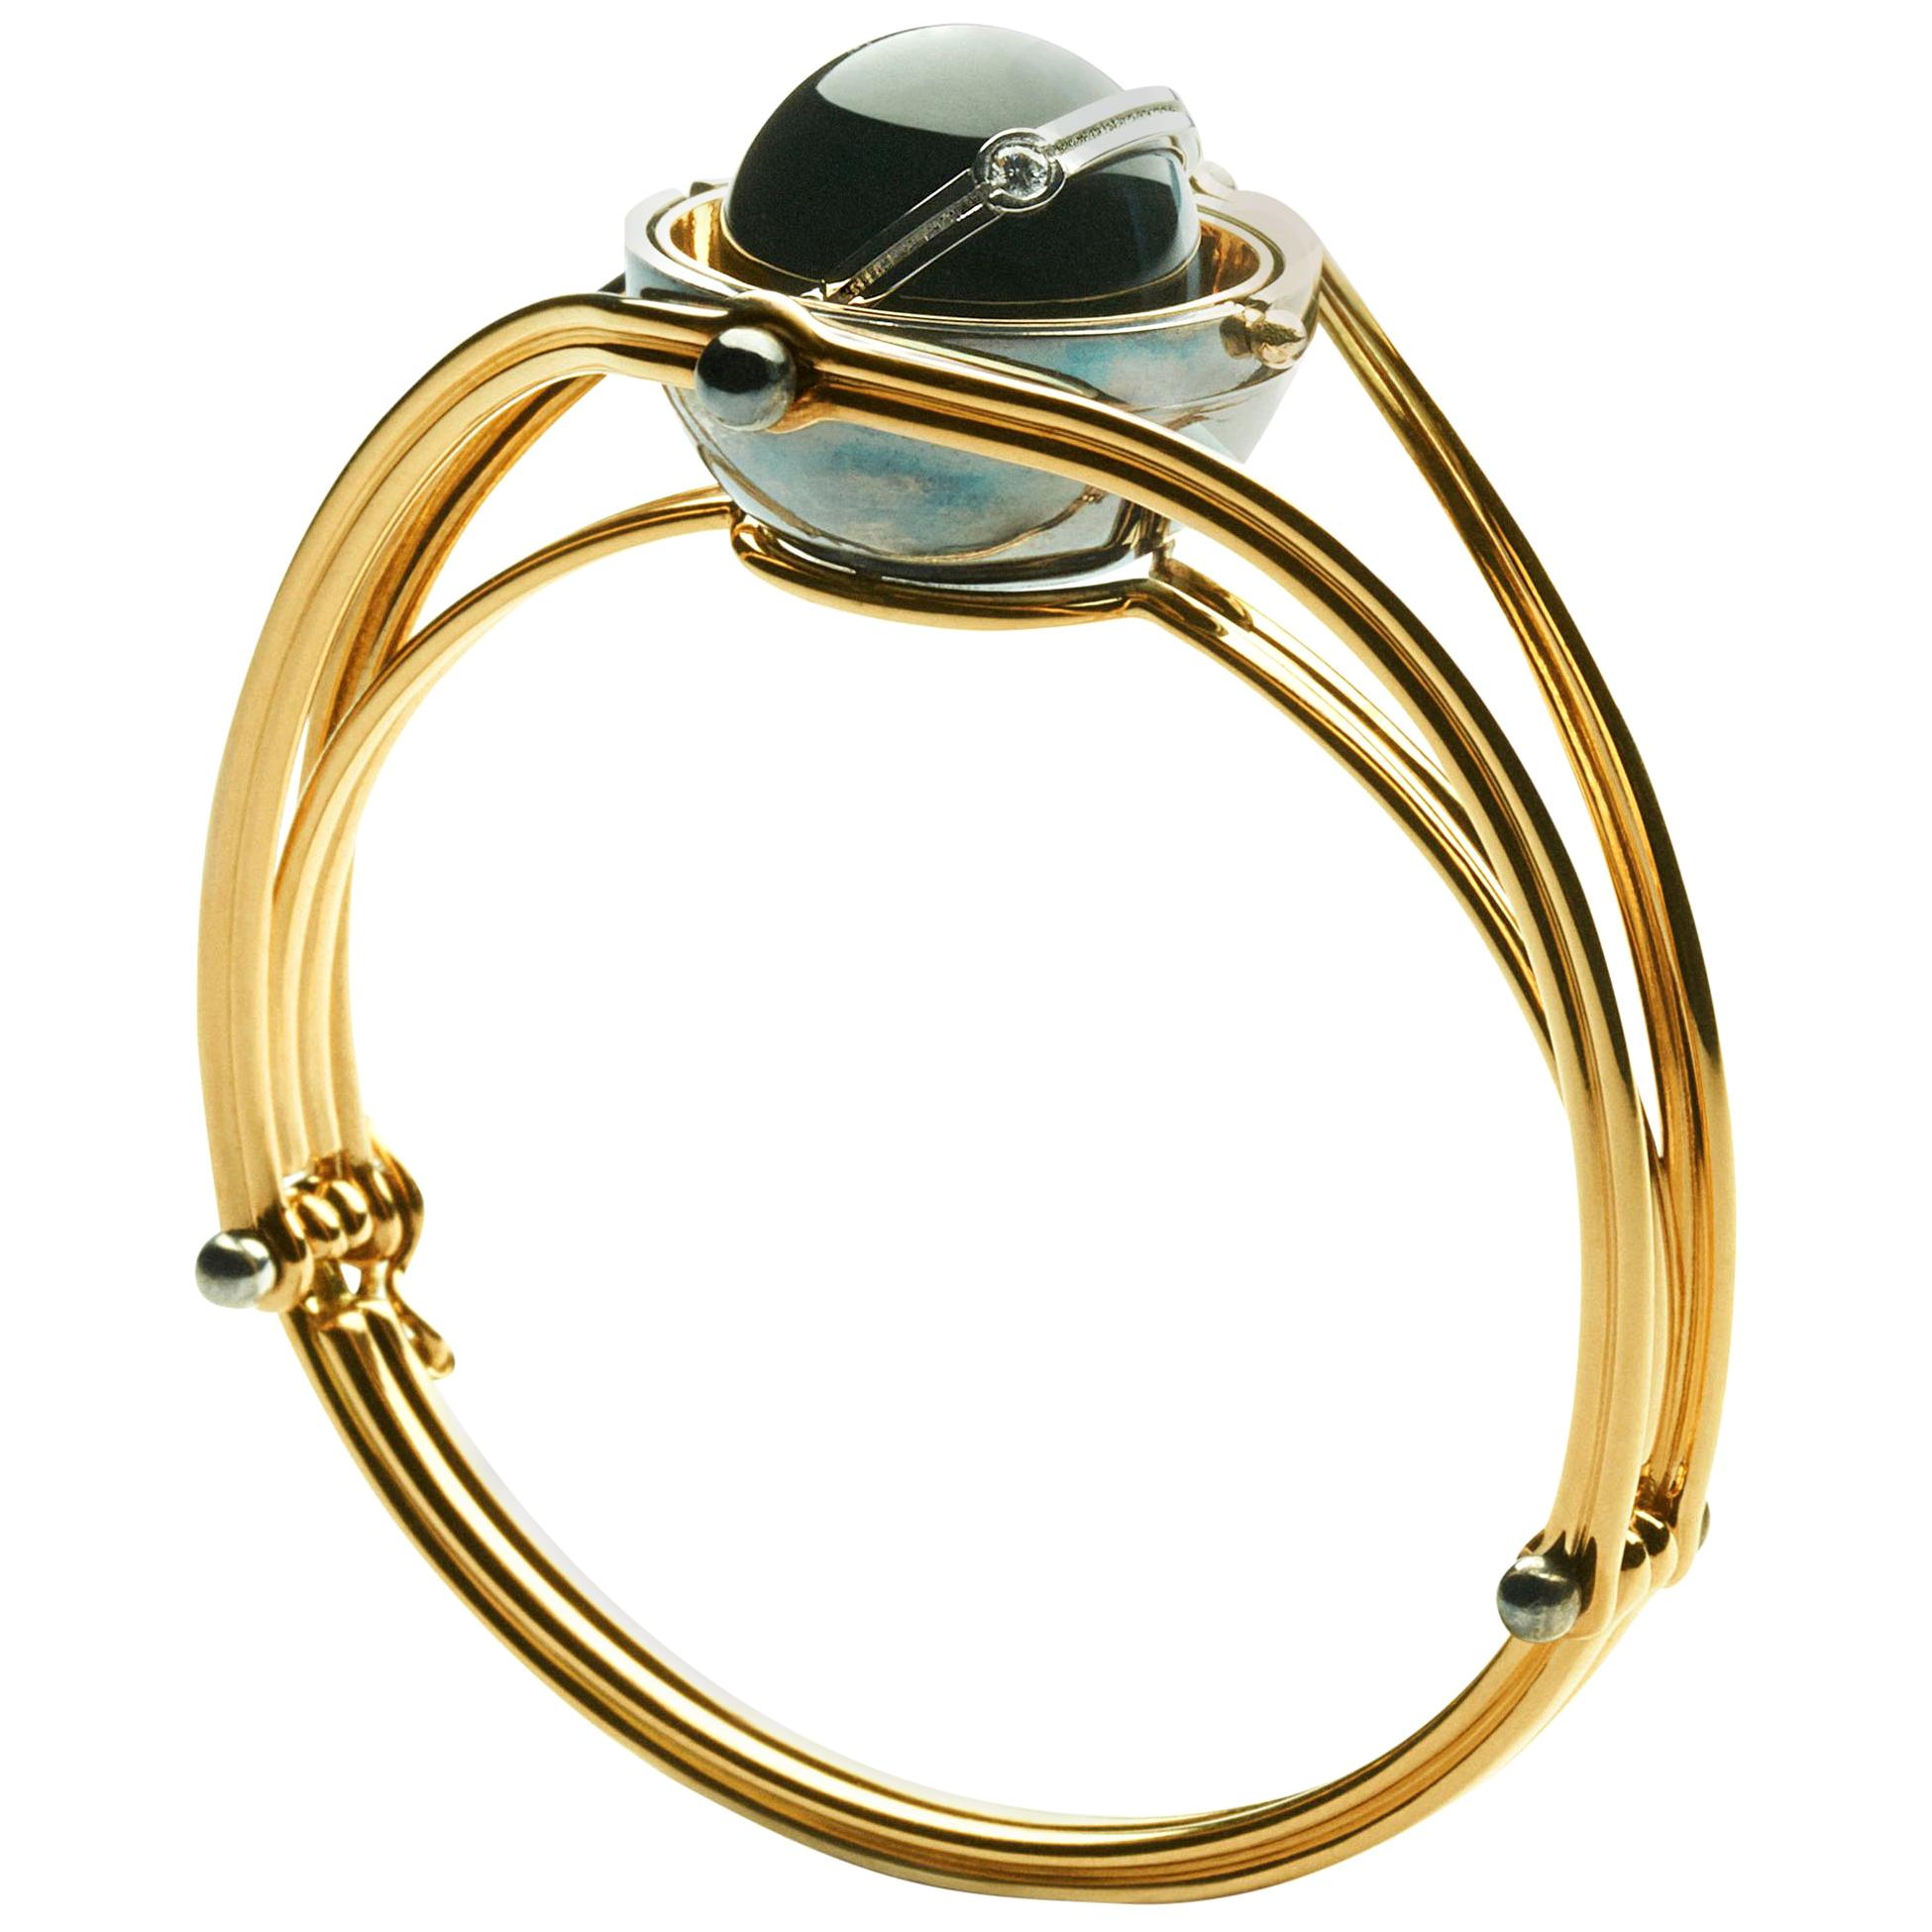 Onyx Diamonds Sphere Bracelet in 18k yellow gold by Elie Top